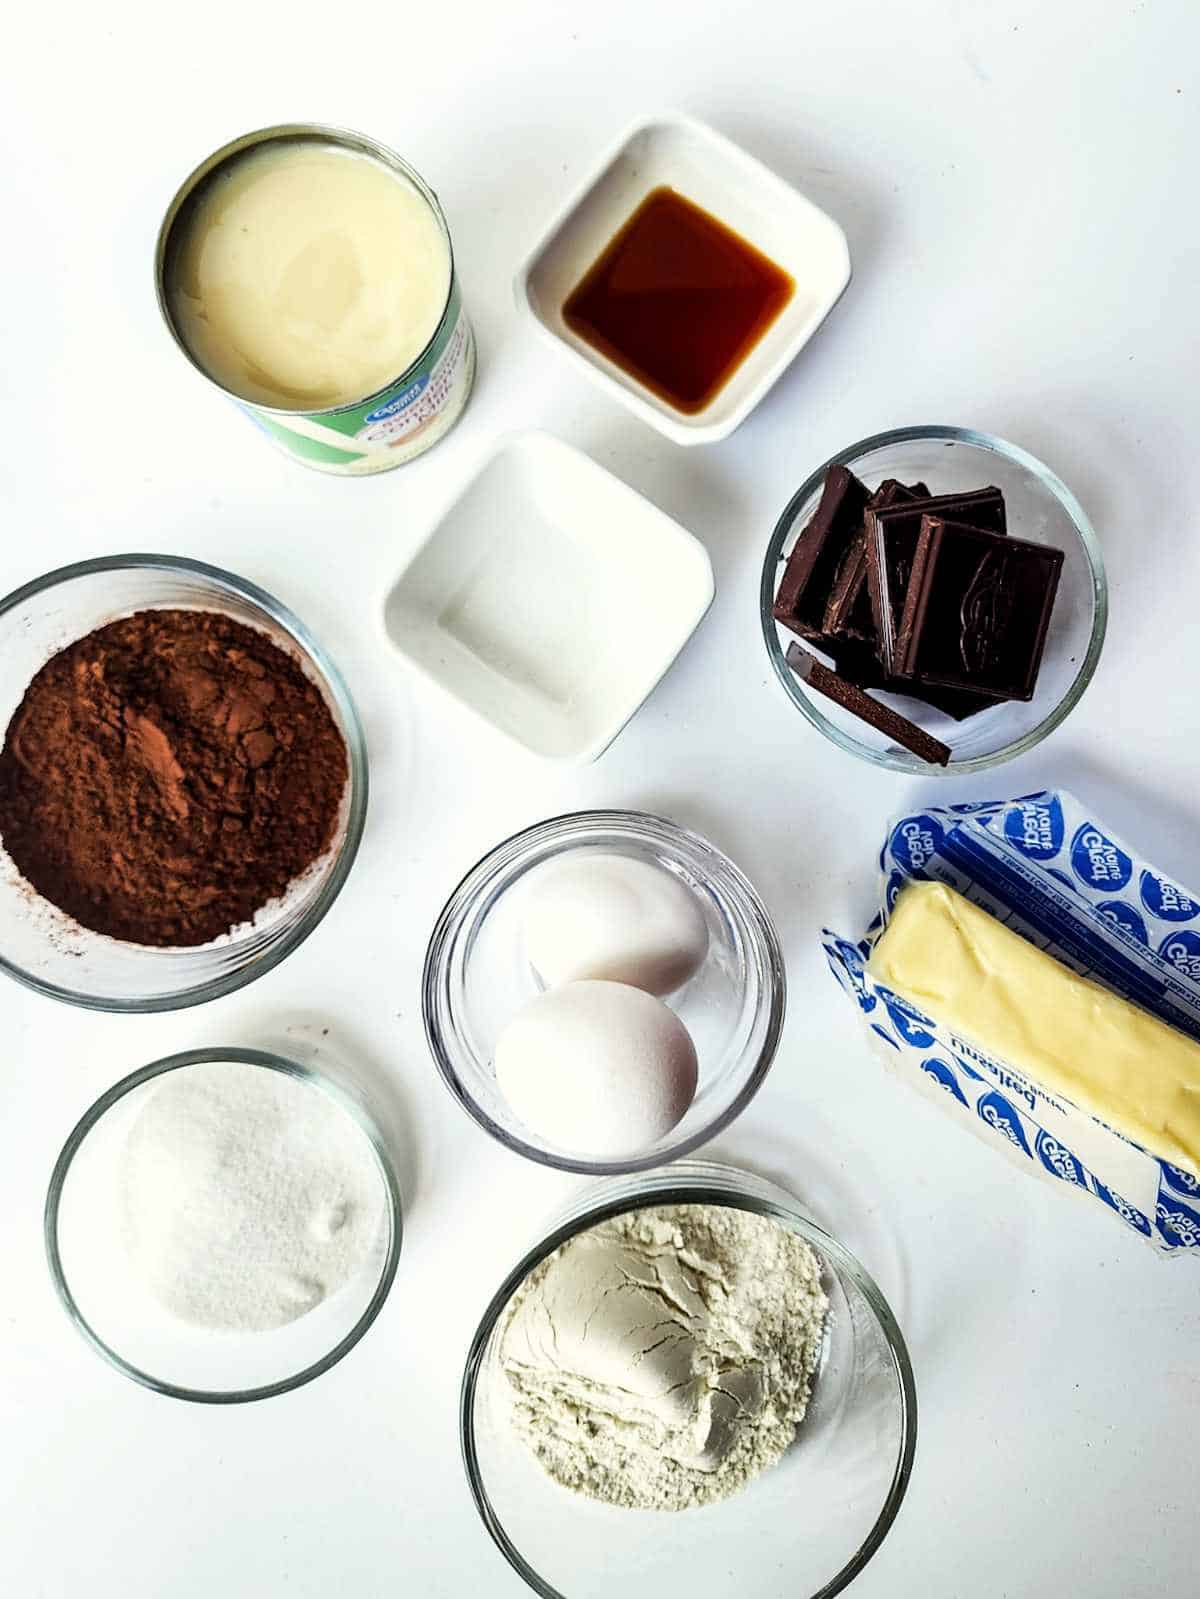 Ingredients for making condensed milk brownies.